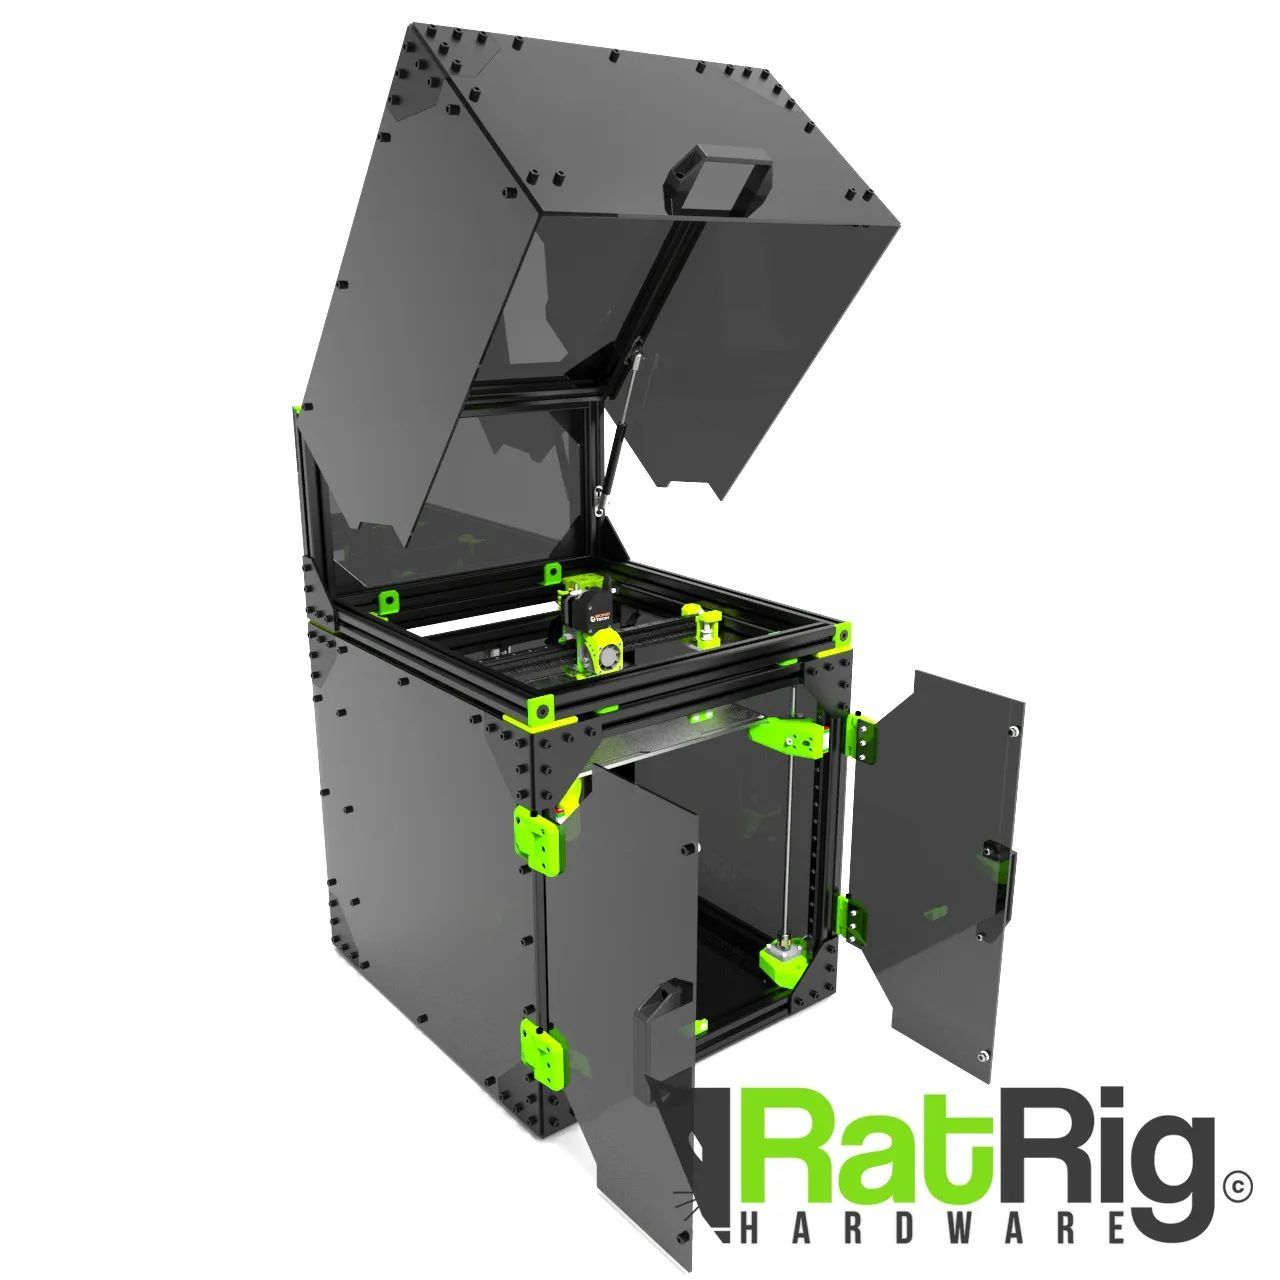 Portachiavi 3D y Rat Rig, han alcanzado un acuerdo por el cual la empresa asturiana distribuirá las afamadas maquinas de impresión 3D, de las gamas V-core3 y V-Minion en España con efecto inmediato.  Las impresoras RatRig es un diseño que en colaboración con la comunidad, permite alcanzar una gran cantidad de hitos en cada aspecto de la maquina, como por ejemplo, una solida construcción, la capacidad de albergar cabezales modulares y gran rapidez de impresión, esto se ha logrado seleccionando  los mejores componentes del mercado para su fabricación, y garantizando por ello los mejores resultados posibles, además es un producto de fabricación portuguesa, y por tanto de gran calidad al estar fabricado en la Unión Europea, esfuerzo de la compañía Asturiana, que siempre busca la perfección, y redobla la apuesta por los fabricantes europeos de calidad, tras E3D, Bondtech, y las principales marcas de filamento Español. Este acuerdo llega tras varios meses de testeos de la RatRig V-Core 3 modelo 400 por parte de Portachiavi 3D.  Las impresoras se suministraran en kit tal y como proporciona el fabricante, o bien, montadas por el servicio de montaje de la compañía radicada en Gijón, y además, con la posibilidad de adquirir dichas maquinas con paneles de cerramiento, para una impresión perfecta en materiales como ABS o ASA, gracias al servicio de corte laser de Portachiavi 3D.  RatRig, con una gran comunidad de usuarios en Europa, principalmente en Francia, Alemania, Reino Unido y Países Bajos, amplía así su red de distribución, y promete una sólida colaboración con Portachiavi 3D.     Puede adquirir directamente las impresoras aquí   https://portachiavi.es/categoria-producto/impresoras-3d/ratrig/